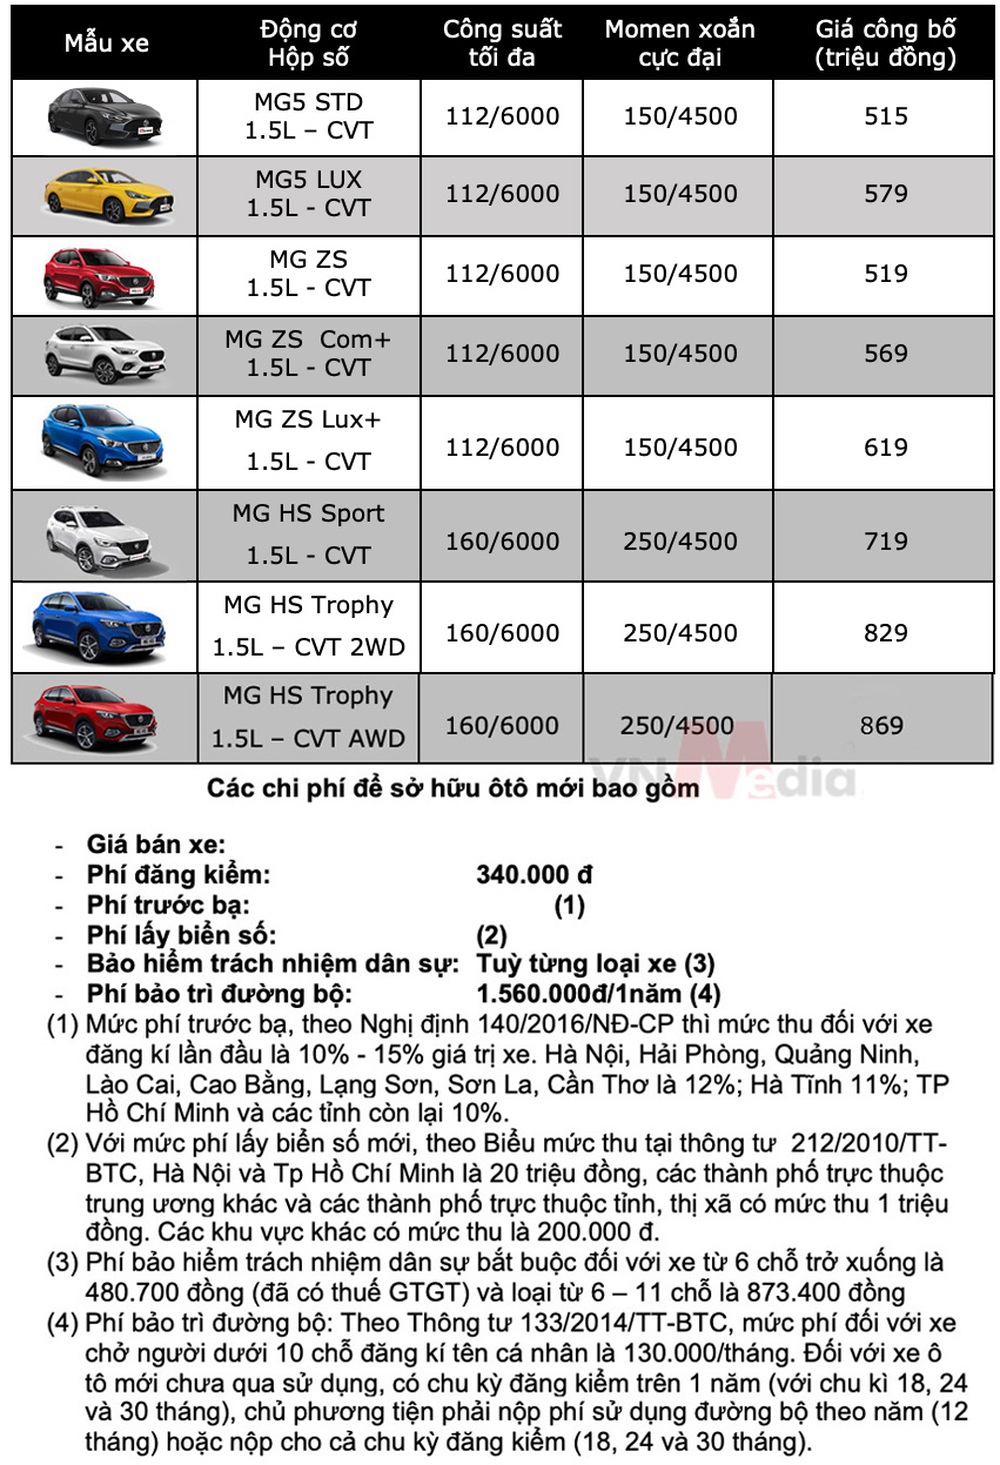 Bảng giá xe MG tháng 6: MG ZS được giảm 50% lệ phí trước bạ - Ảnh 2.